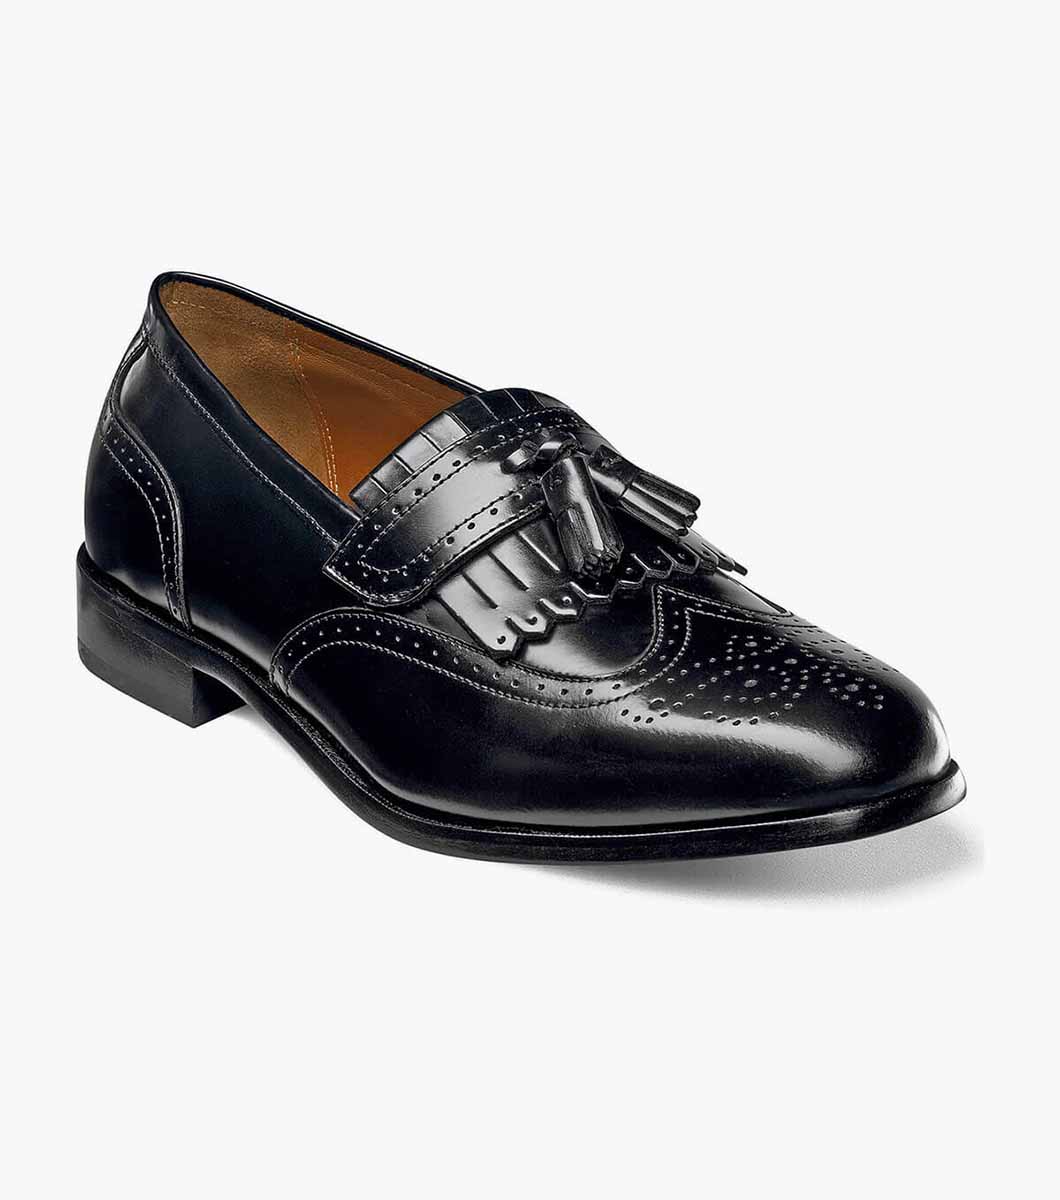 Men’s Dress Shoes | Black Wingtip Tassel Loafer | Florsheim Brinson